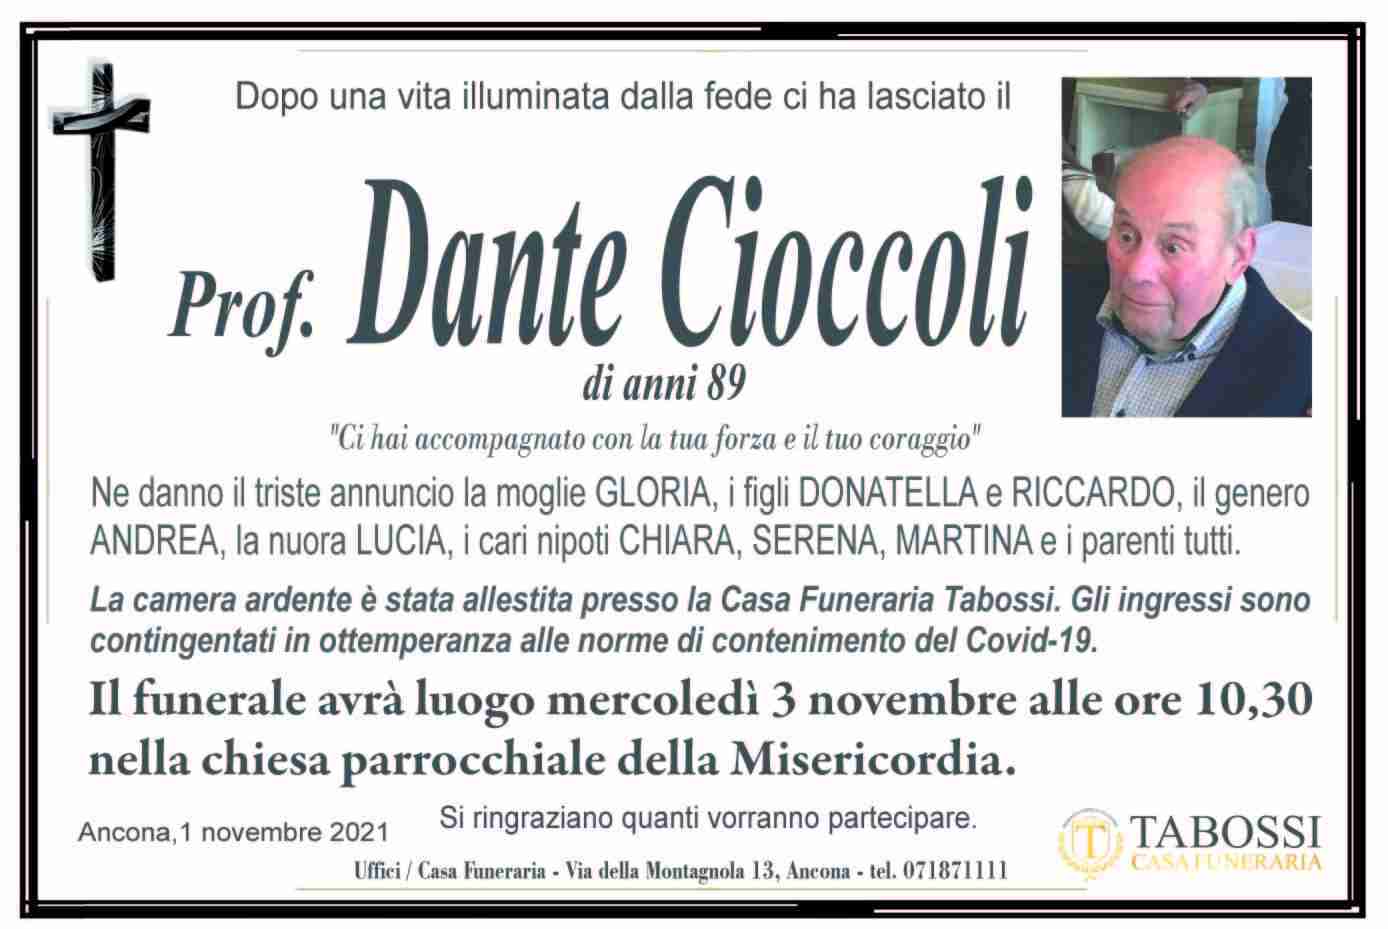 Dante Cioccoli